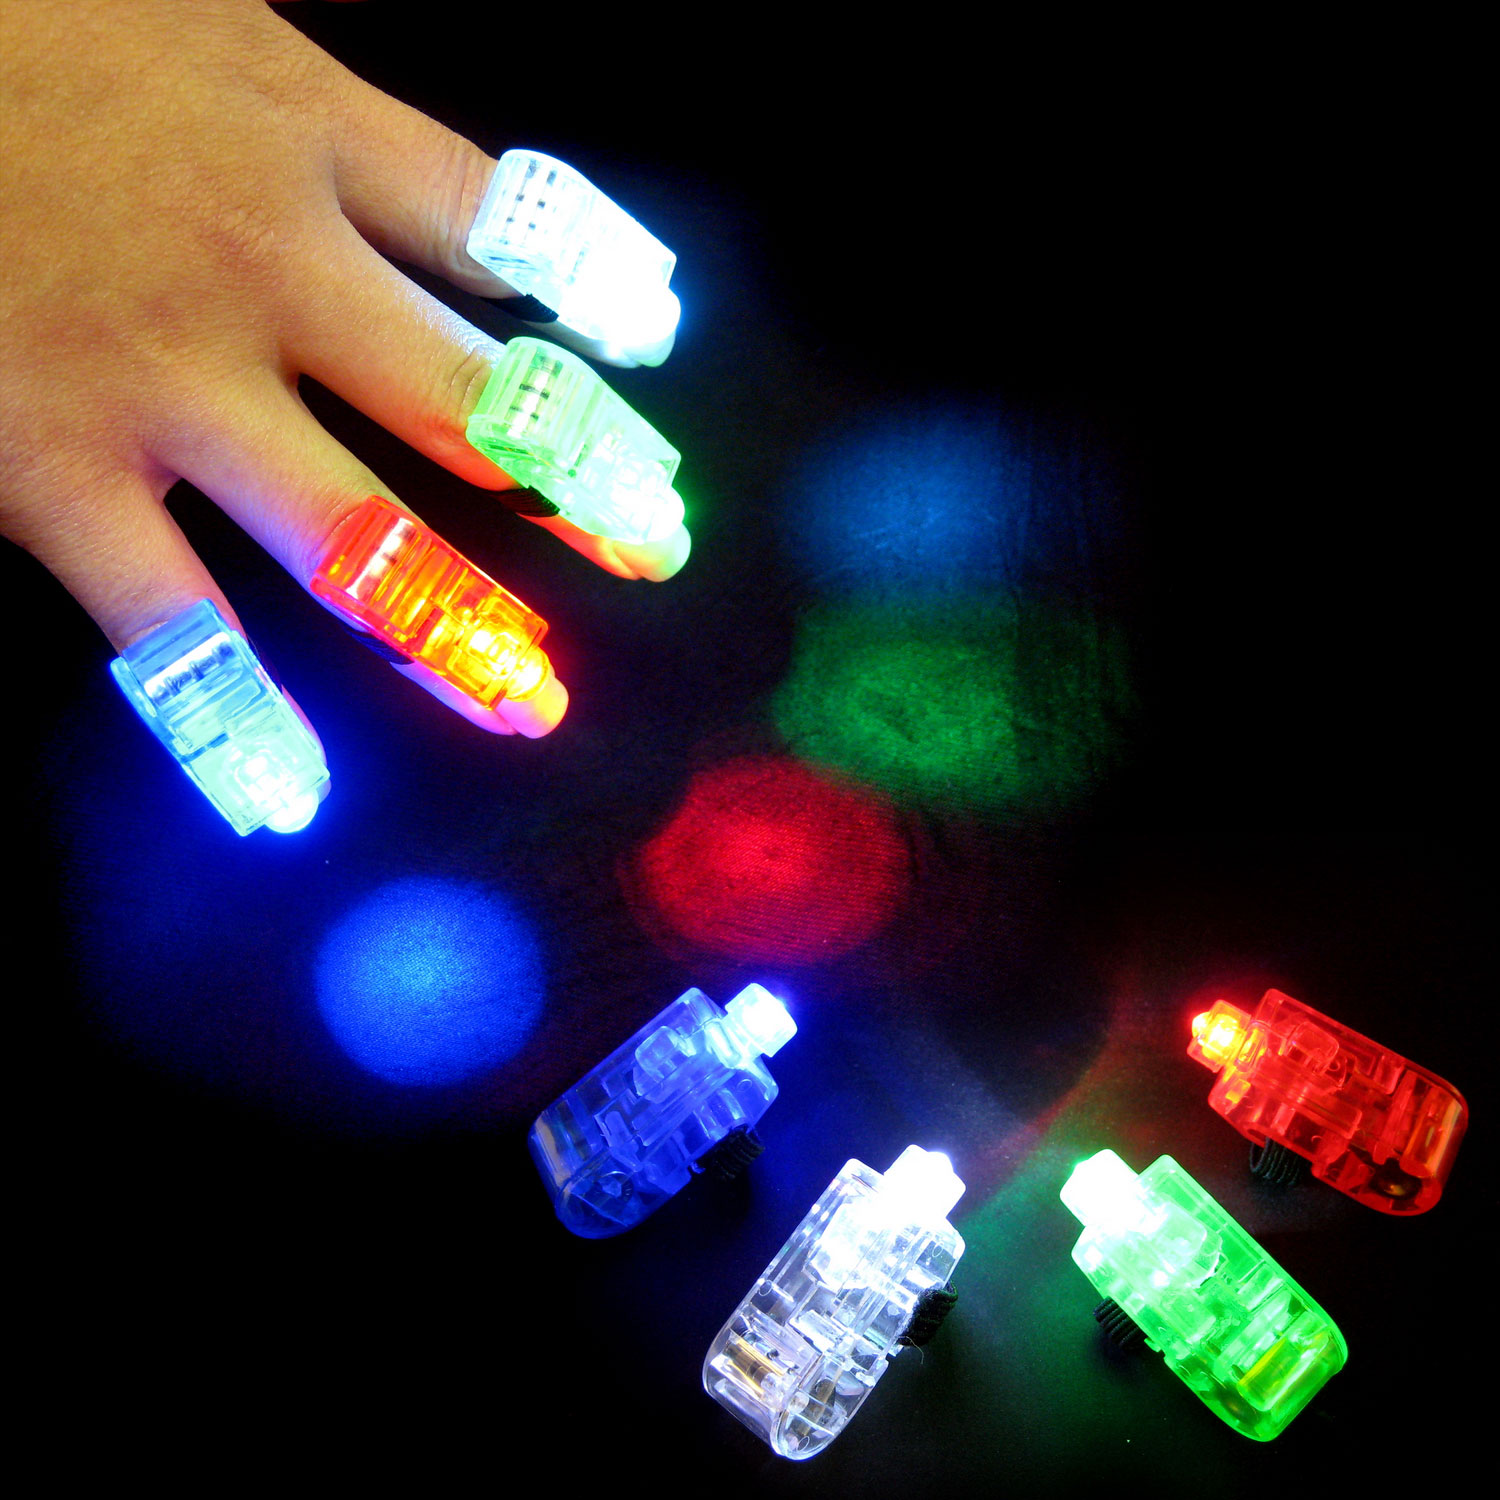 Finger Lights